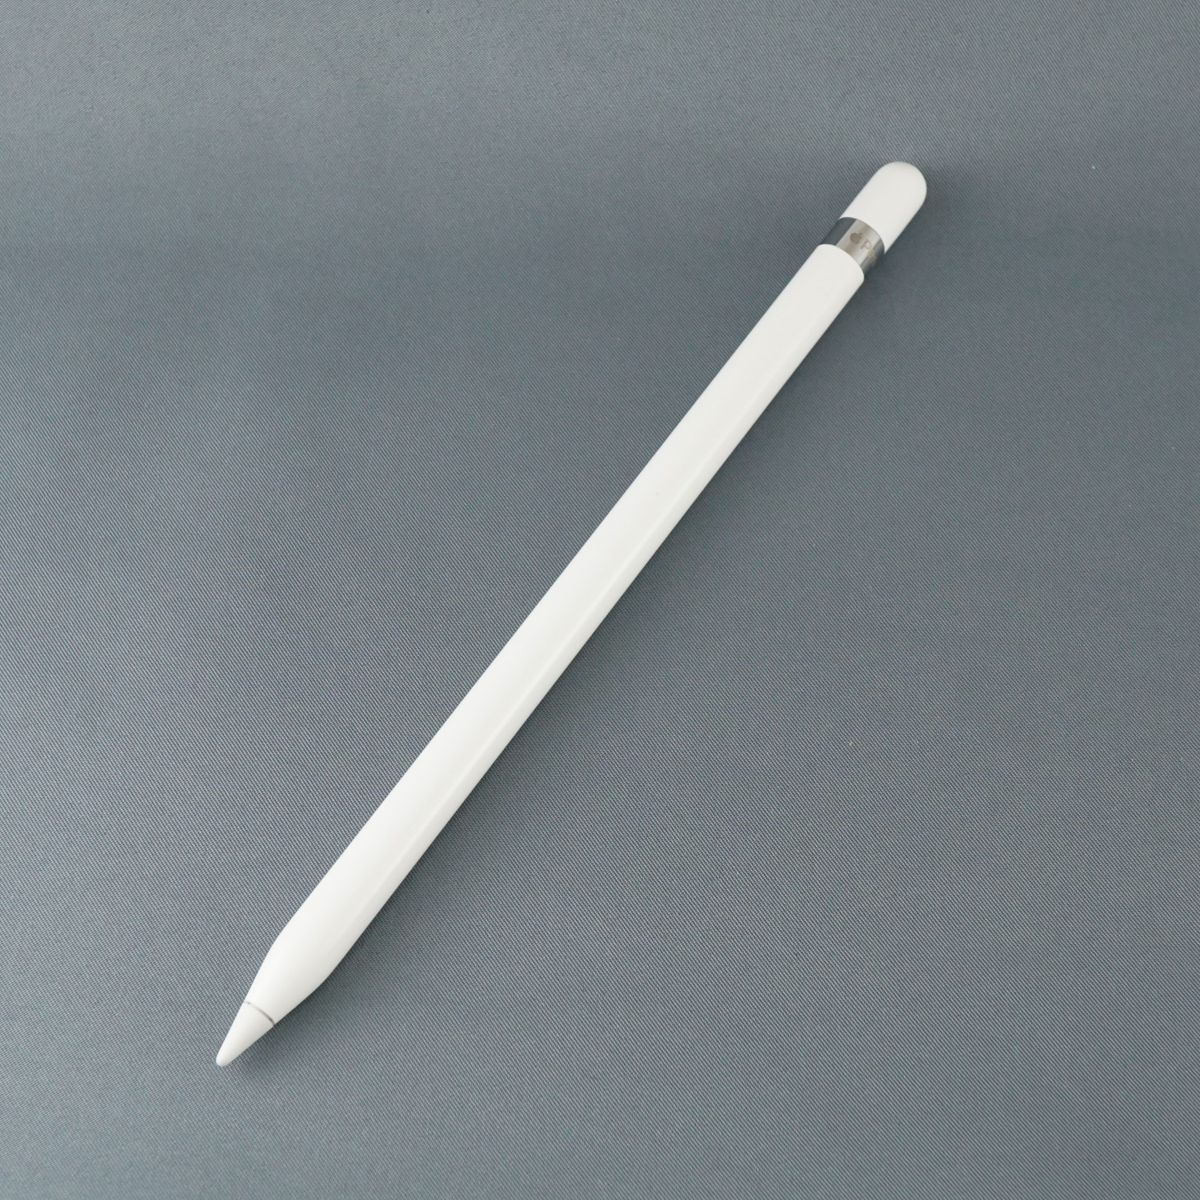 Apple Pencil アップルペンシル USED美品 本体のみ 第一世代 A1603 